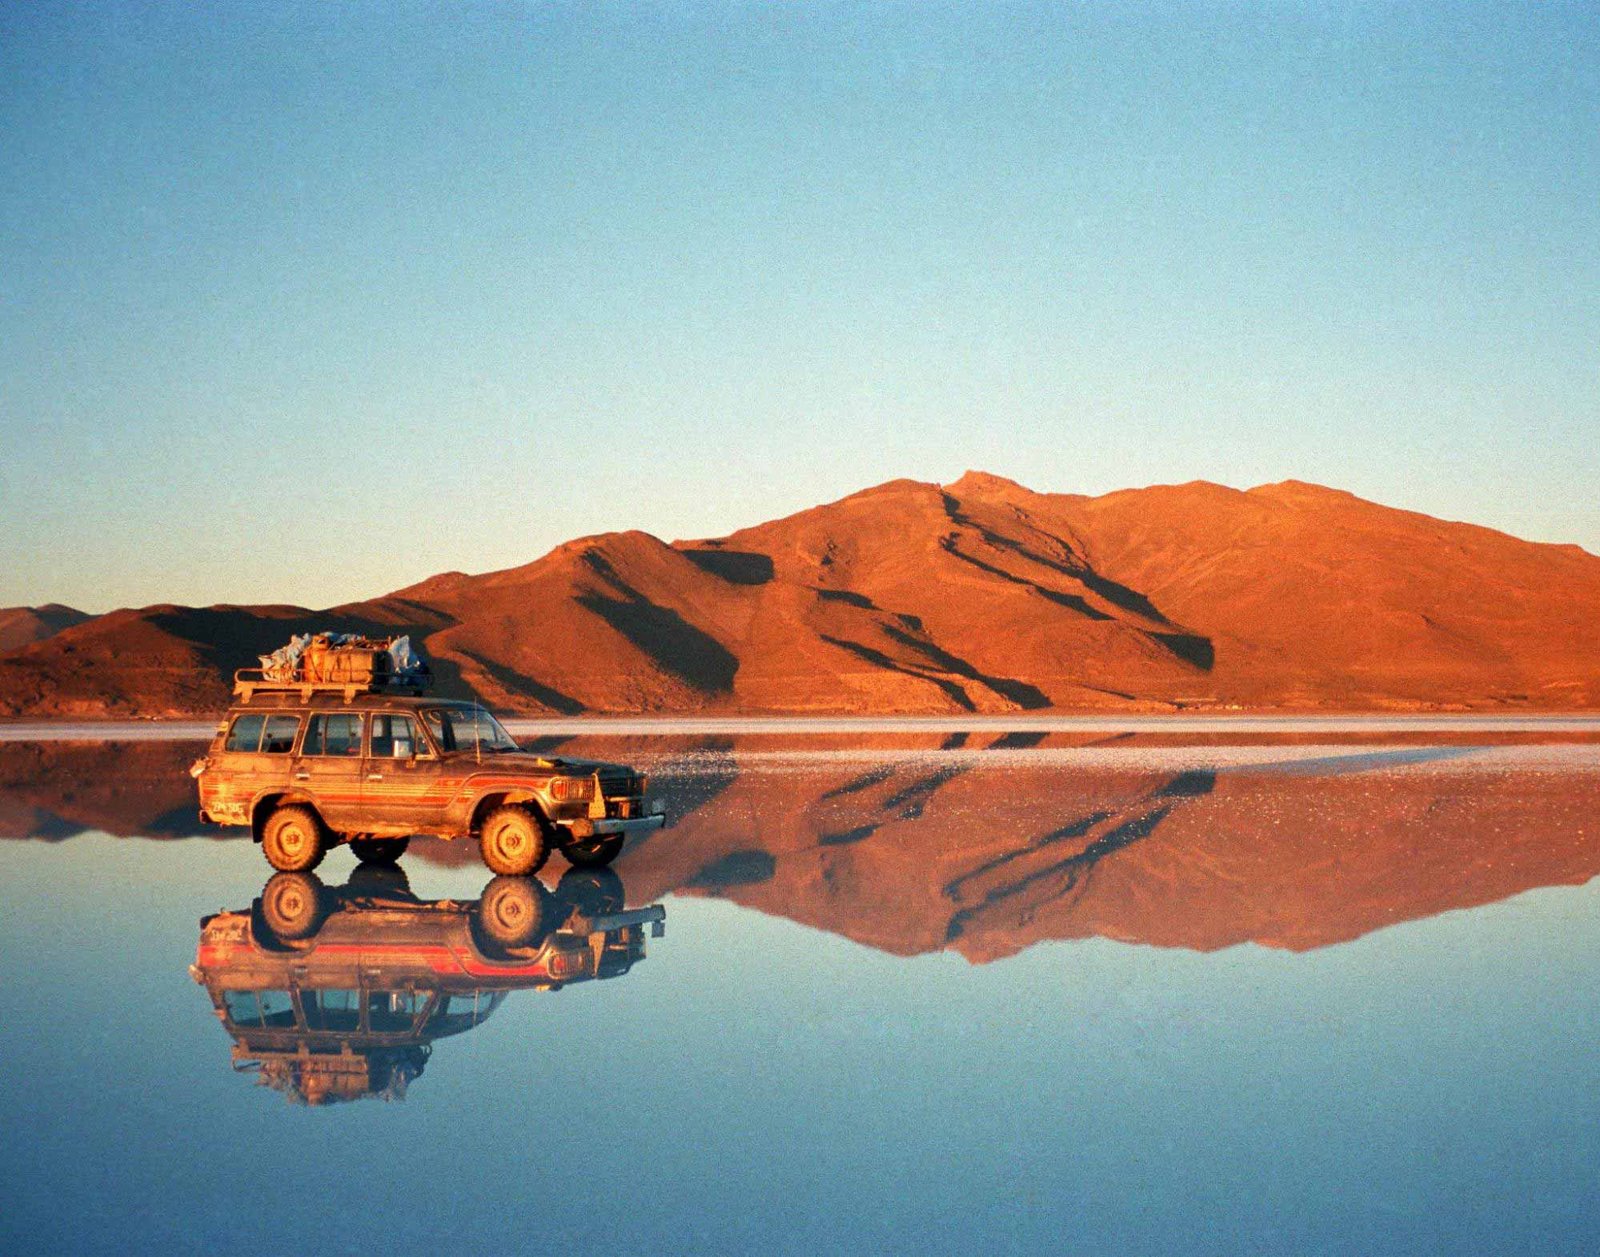 Conheça o maior deserto de sal do mundo: Salar de Uyuni